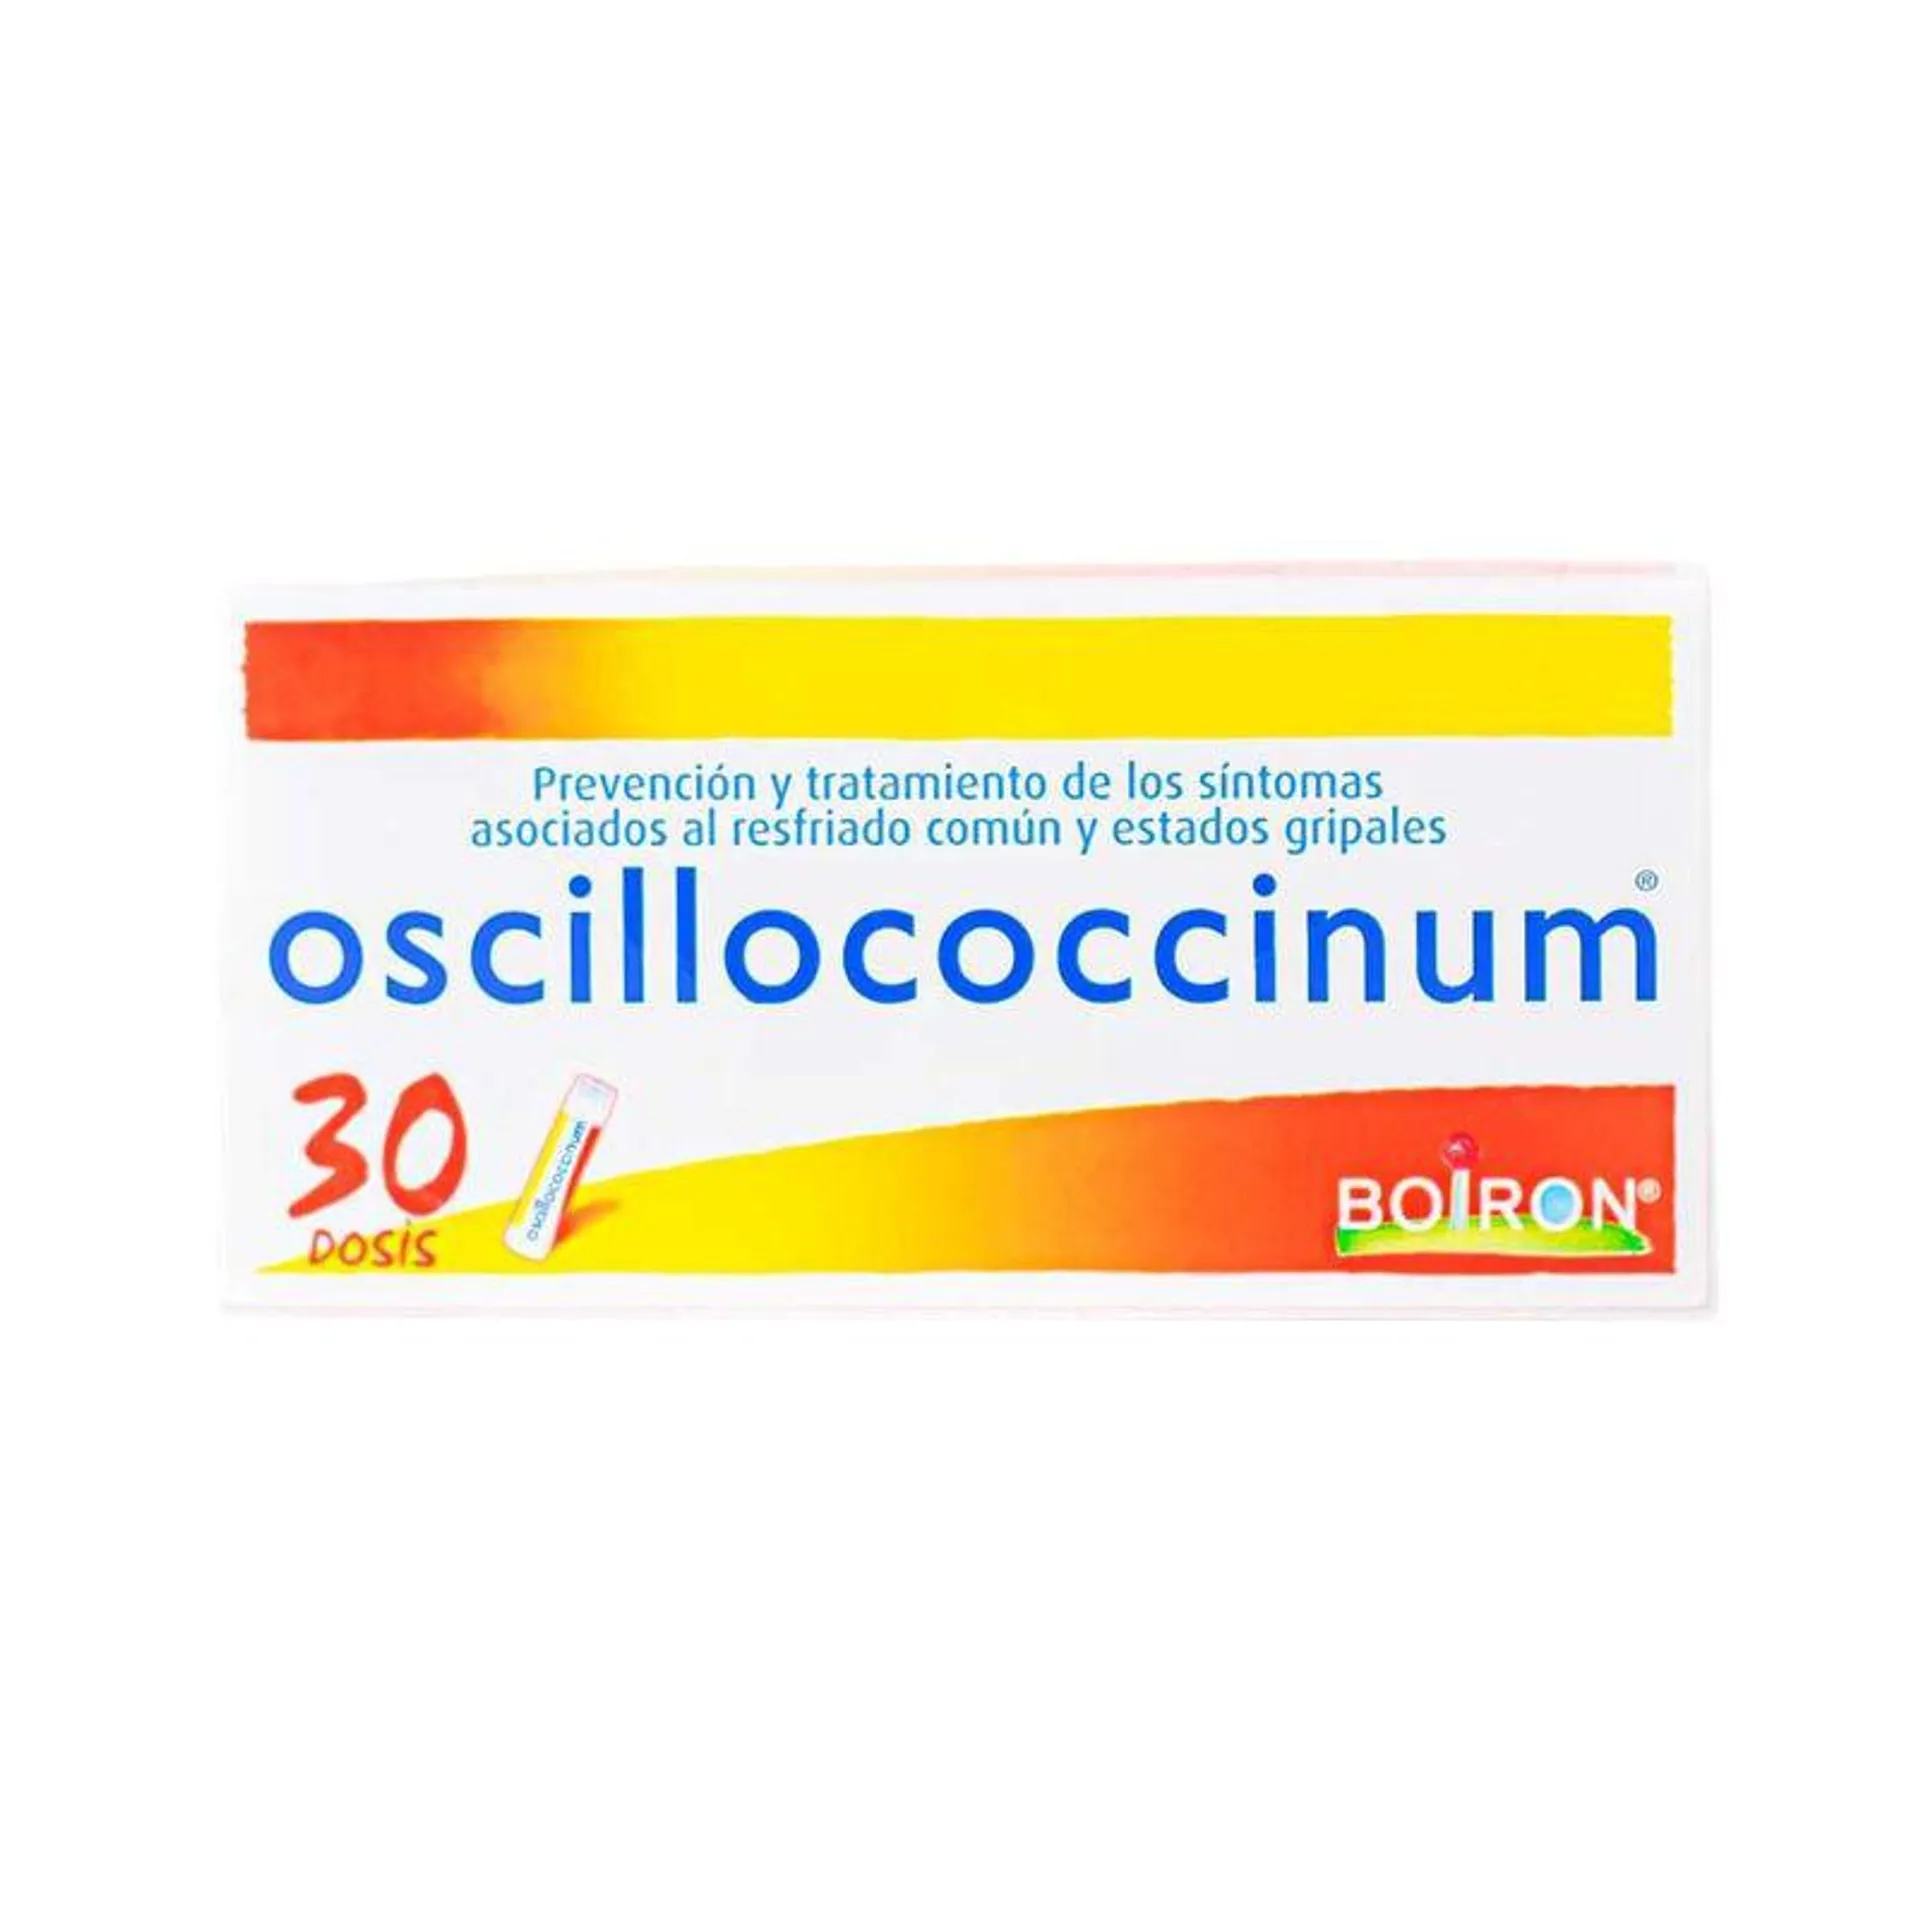 OSCILLOCOCINUM